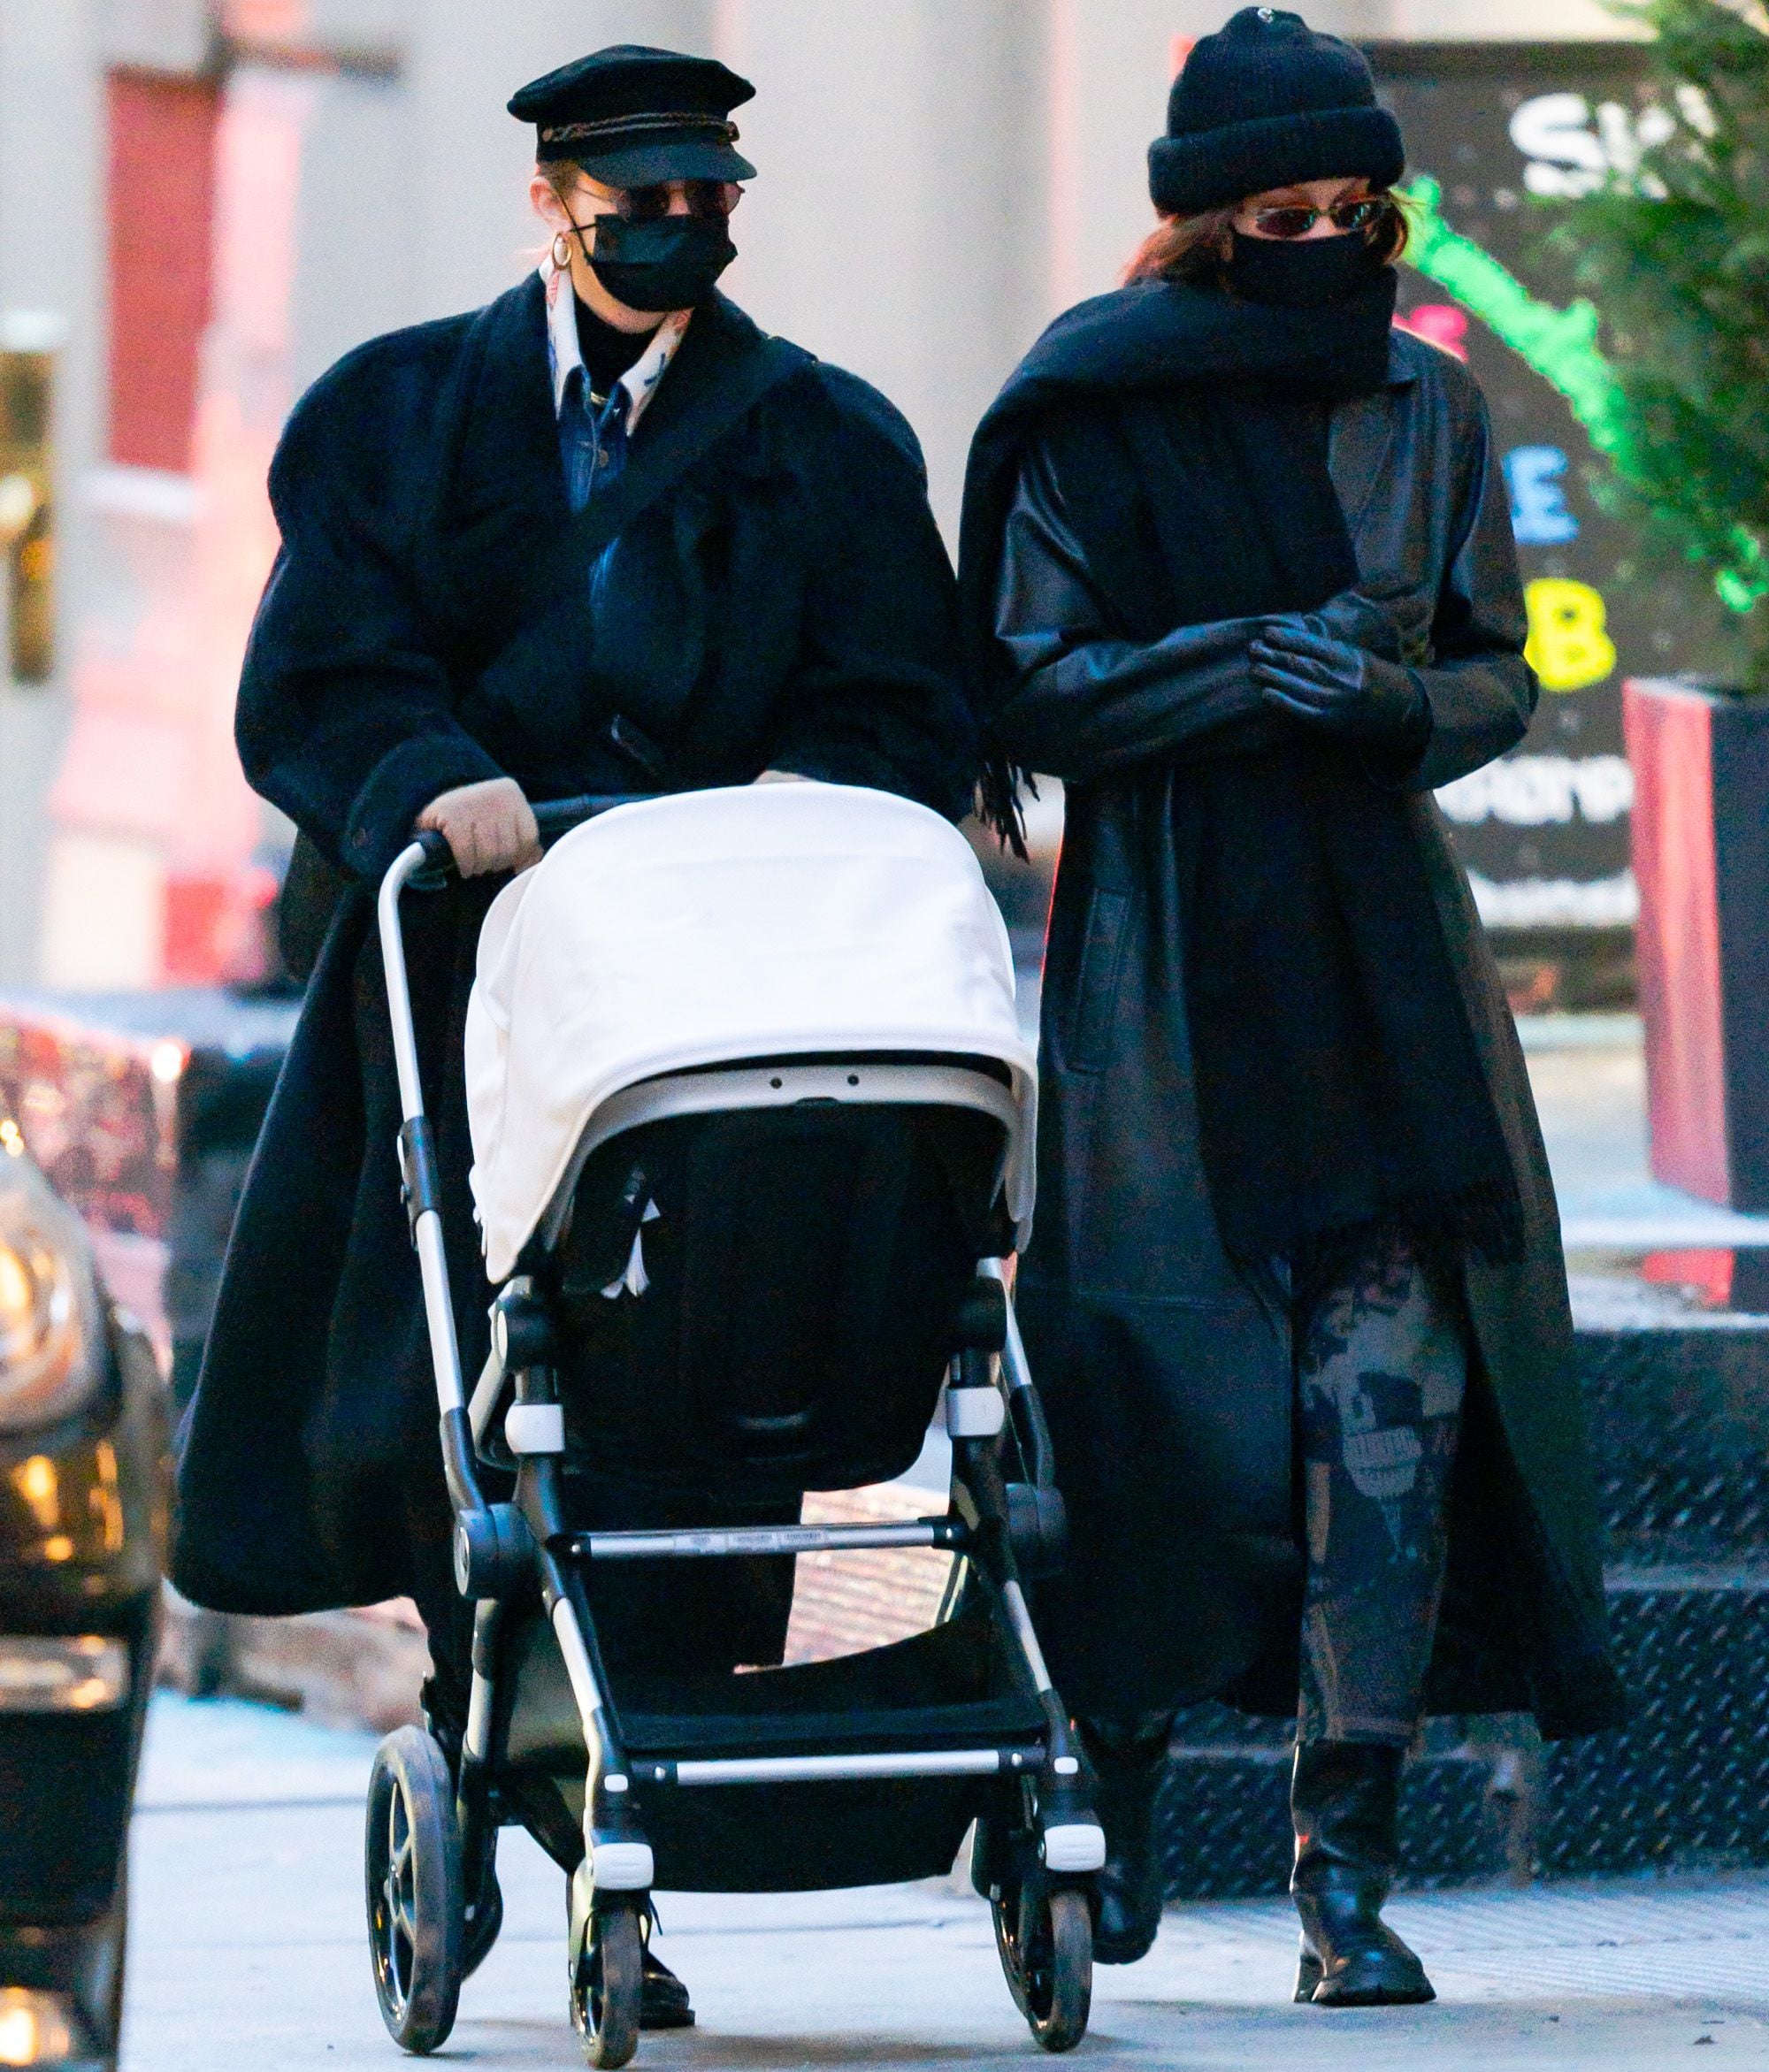 Gigi Hadid, Zayn Malik's Daughter's Baby Album: Family Photos